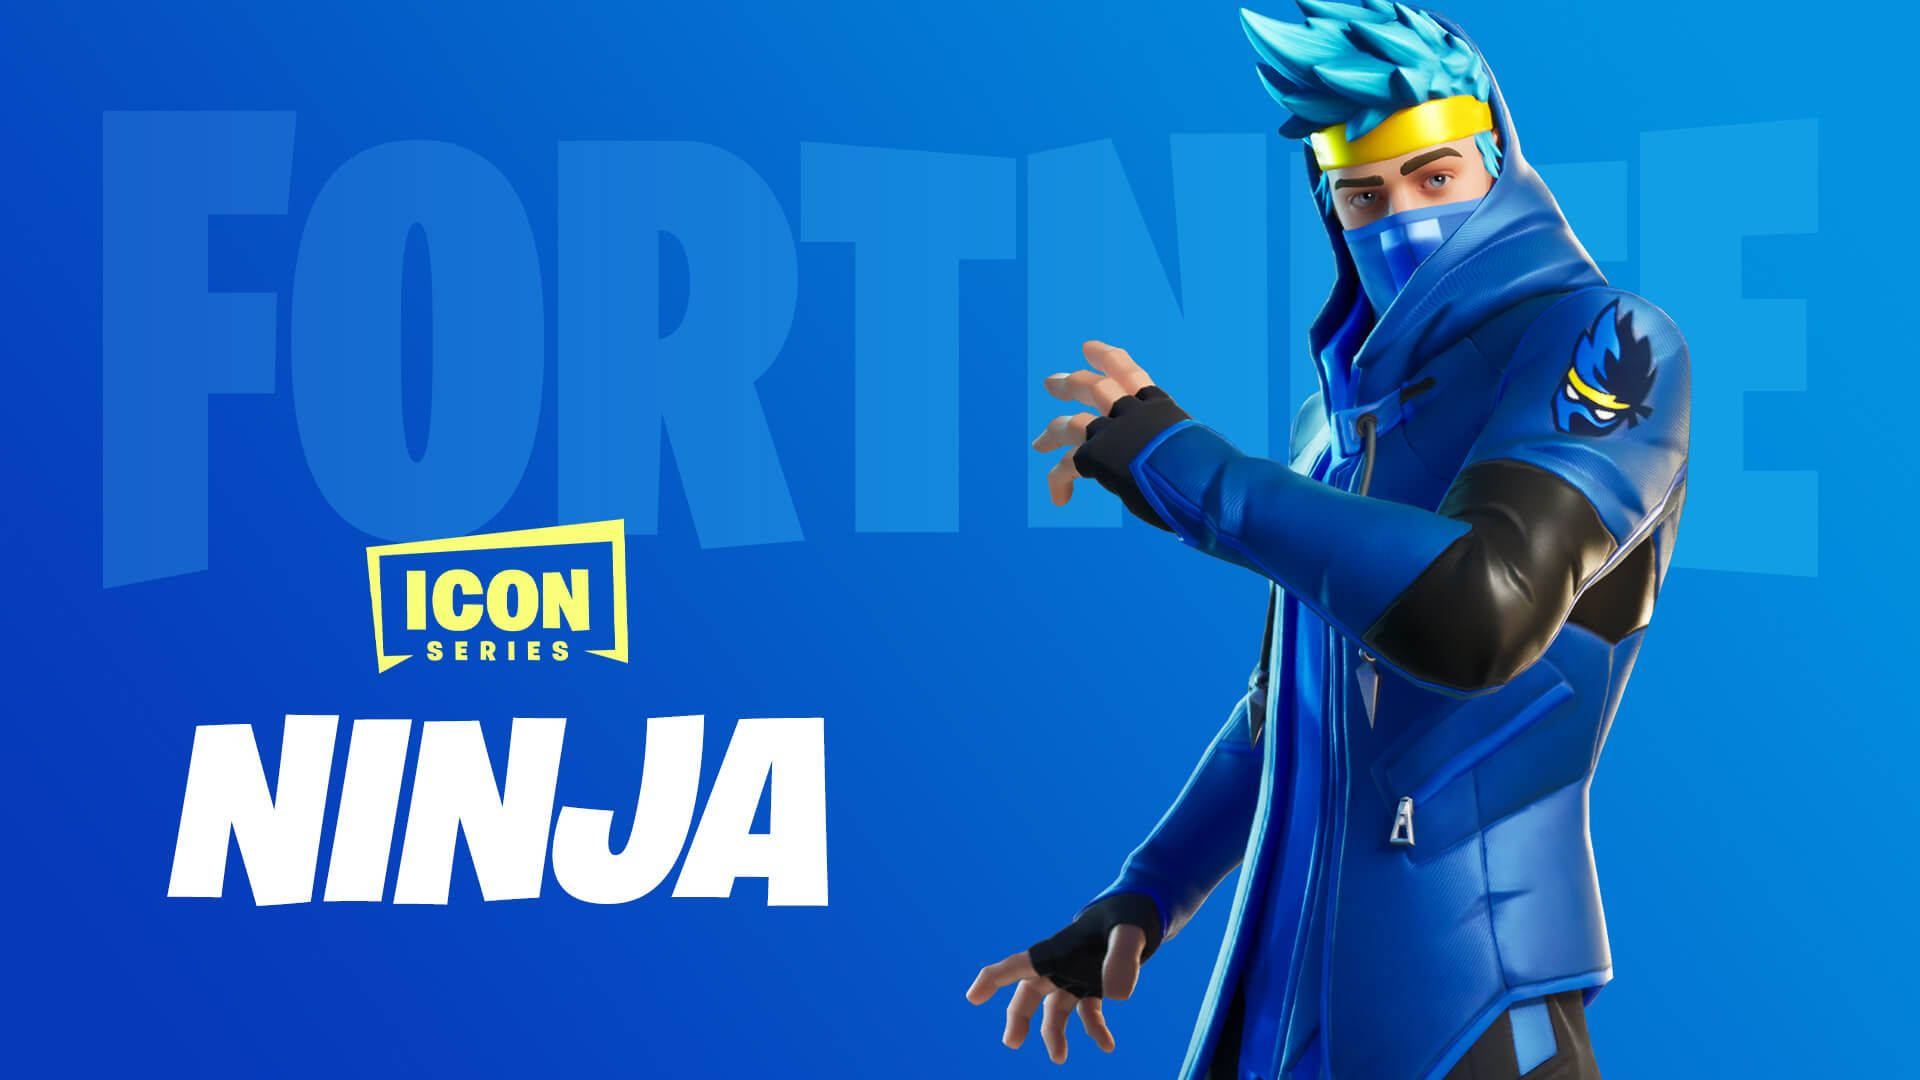 Ninja Fortnite Official Avatar